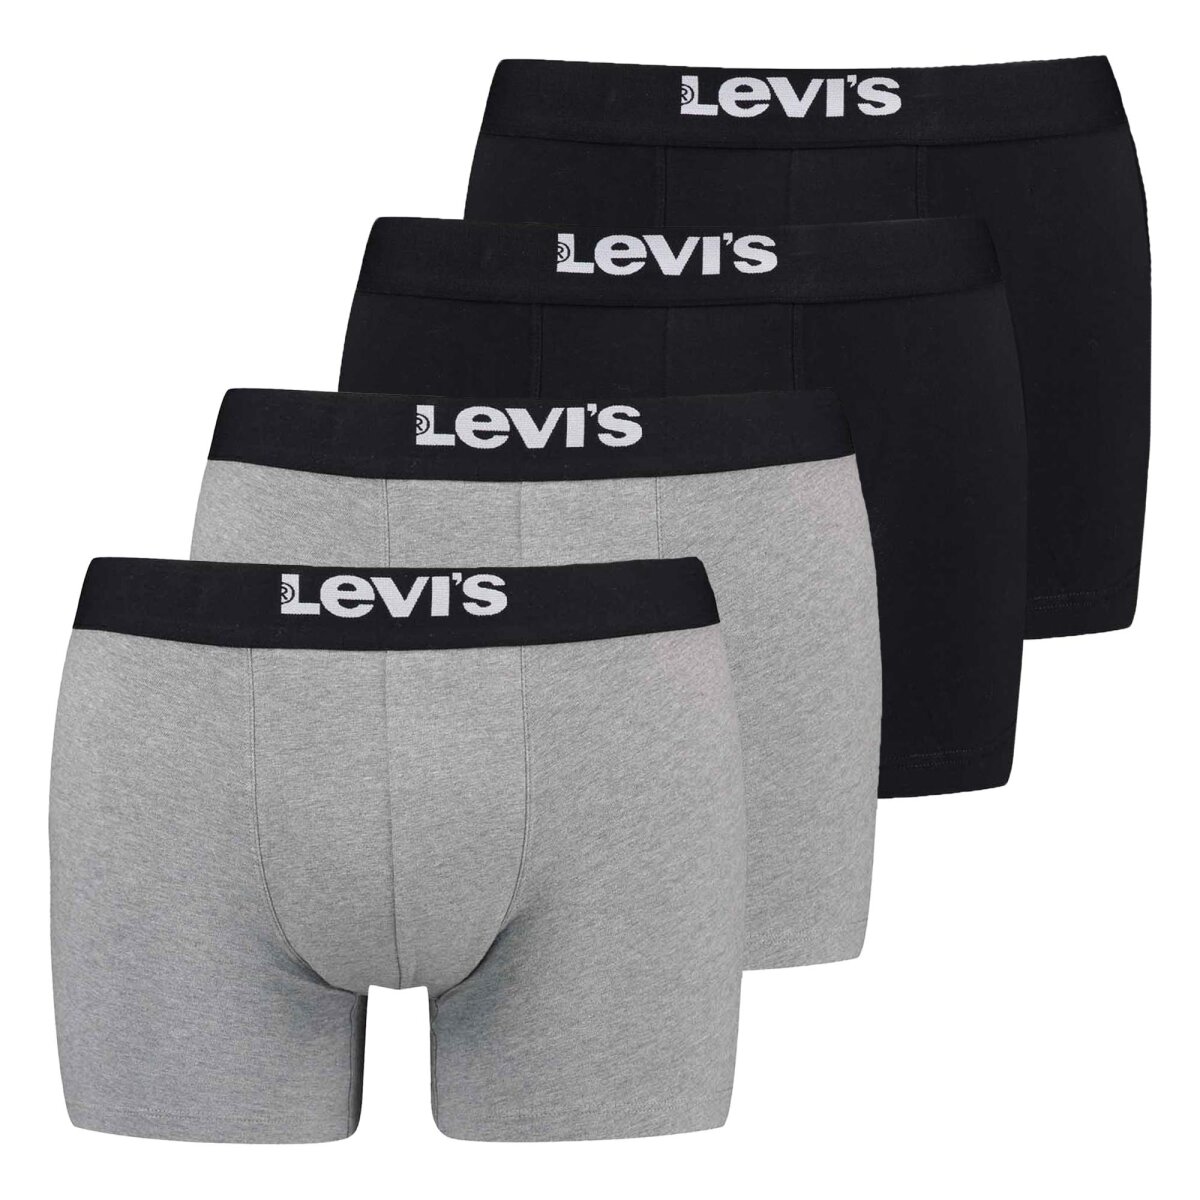 LEVI'S Herren Boxer Shorts - 4er Pack